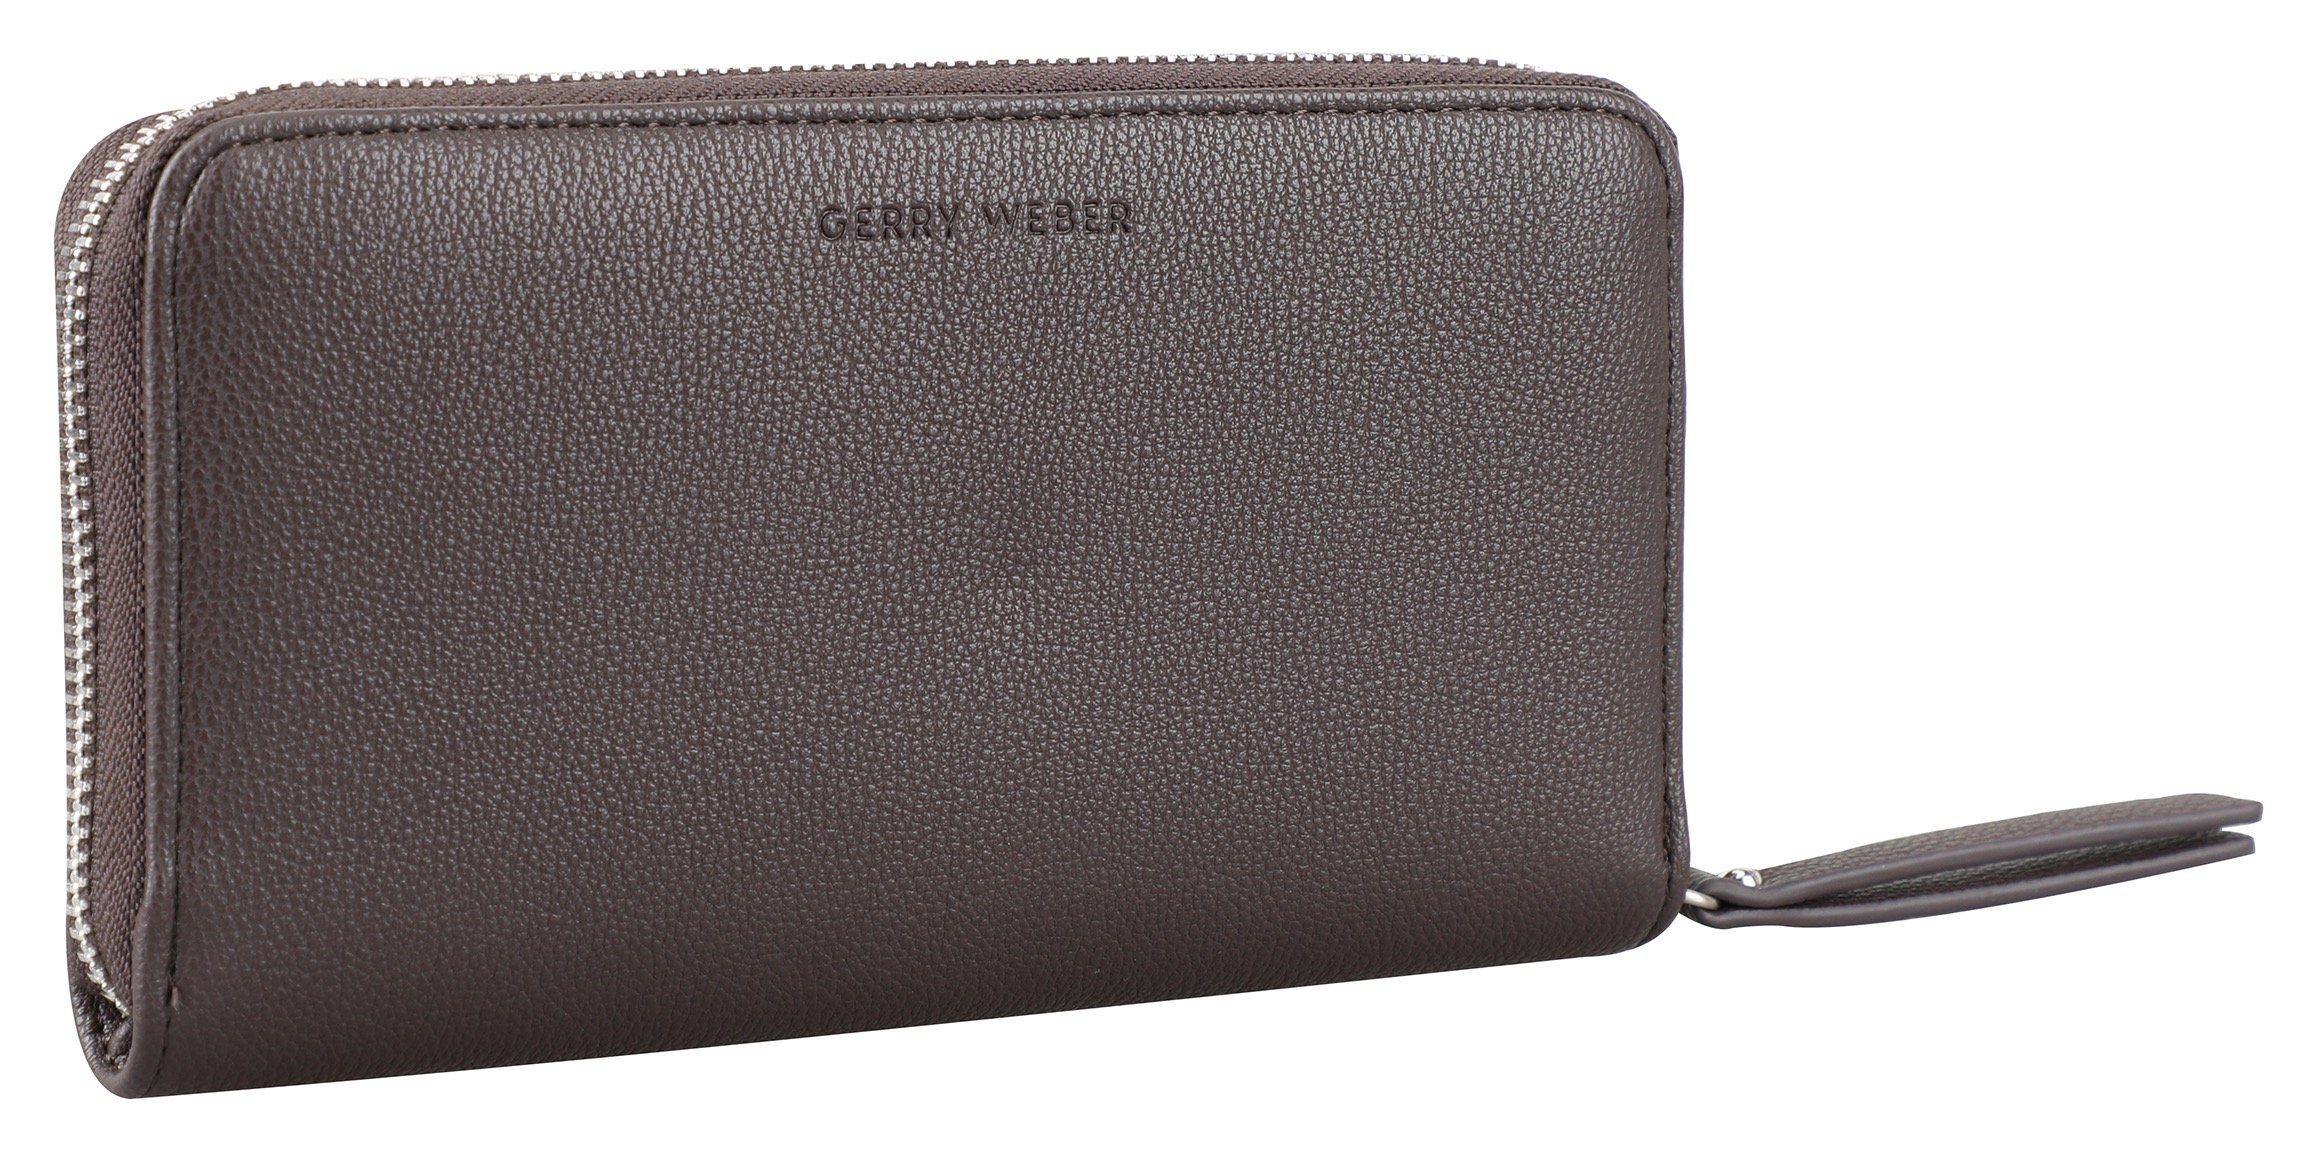 darkbrown WEBER use GERRY mit Geldbörse purse lh13z, Bags Stauraum viel daily